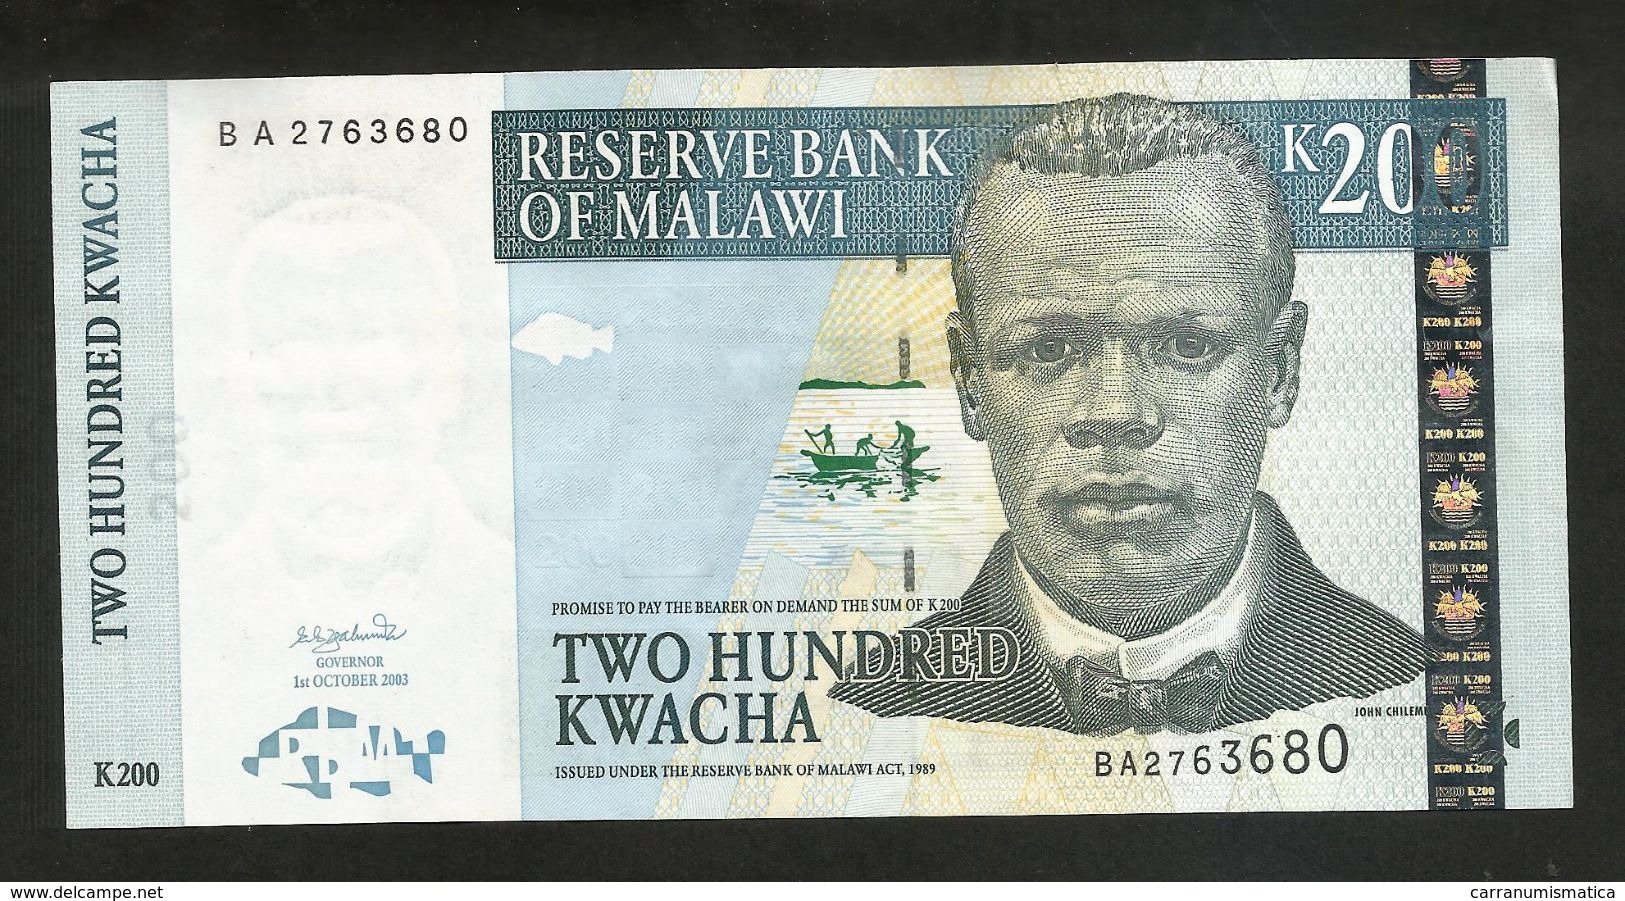 MALAWI - RESERVE BANK Of MALAWI - 200 KWACHA (2003) - Malawi